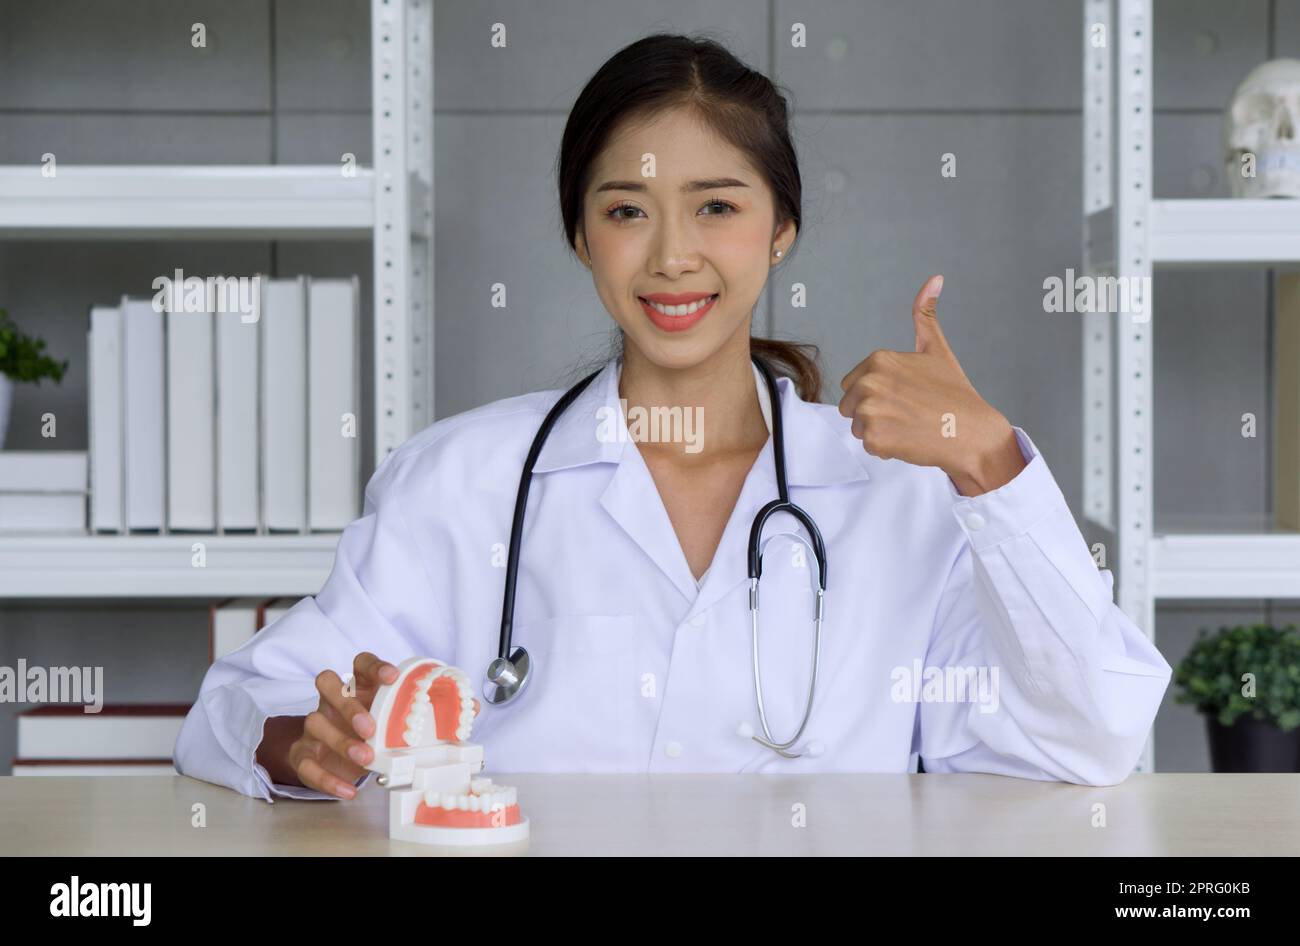 Giovane dentista asiatica in abito bianco e stetoscopio sorridente, alzate il pollice mentre mostrate il modello di denti su un tavolo di legno. Concetto di sanità e medicina. Foto Stock